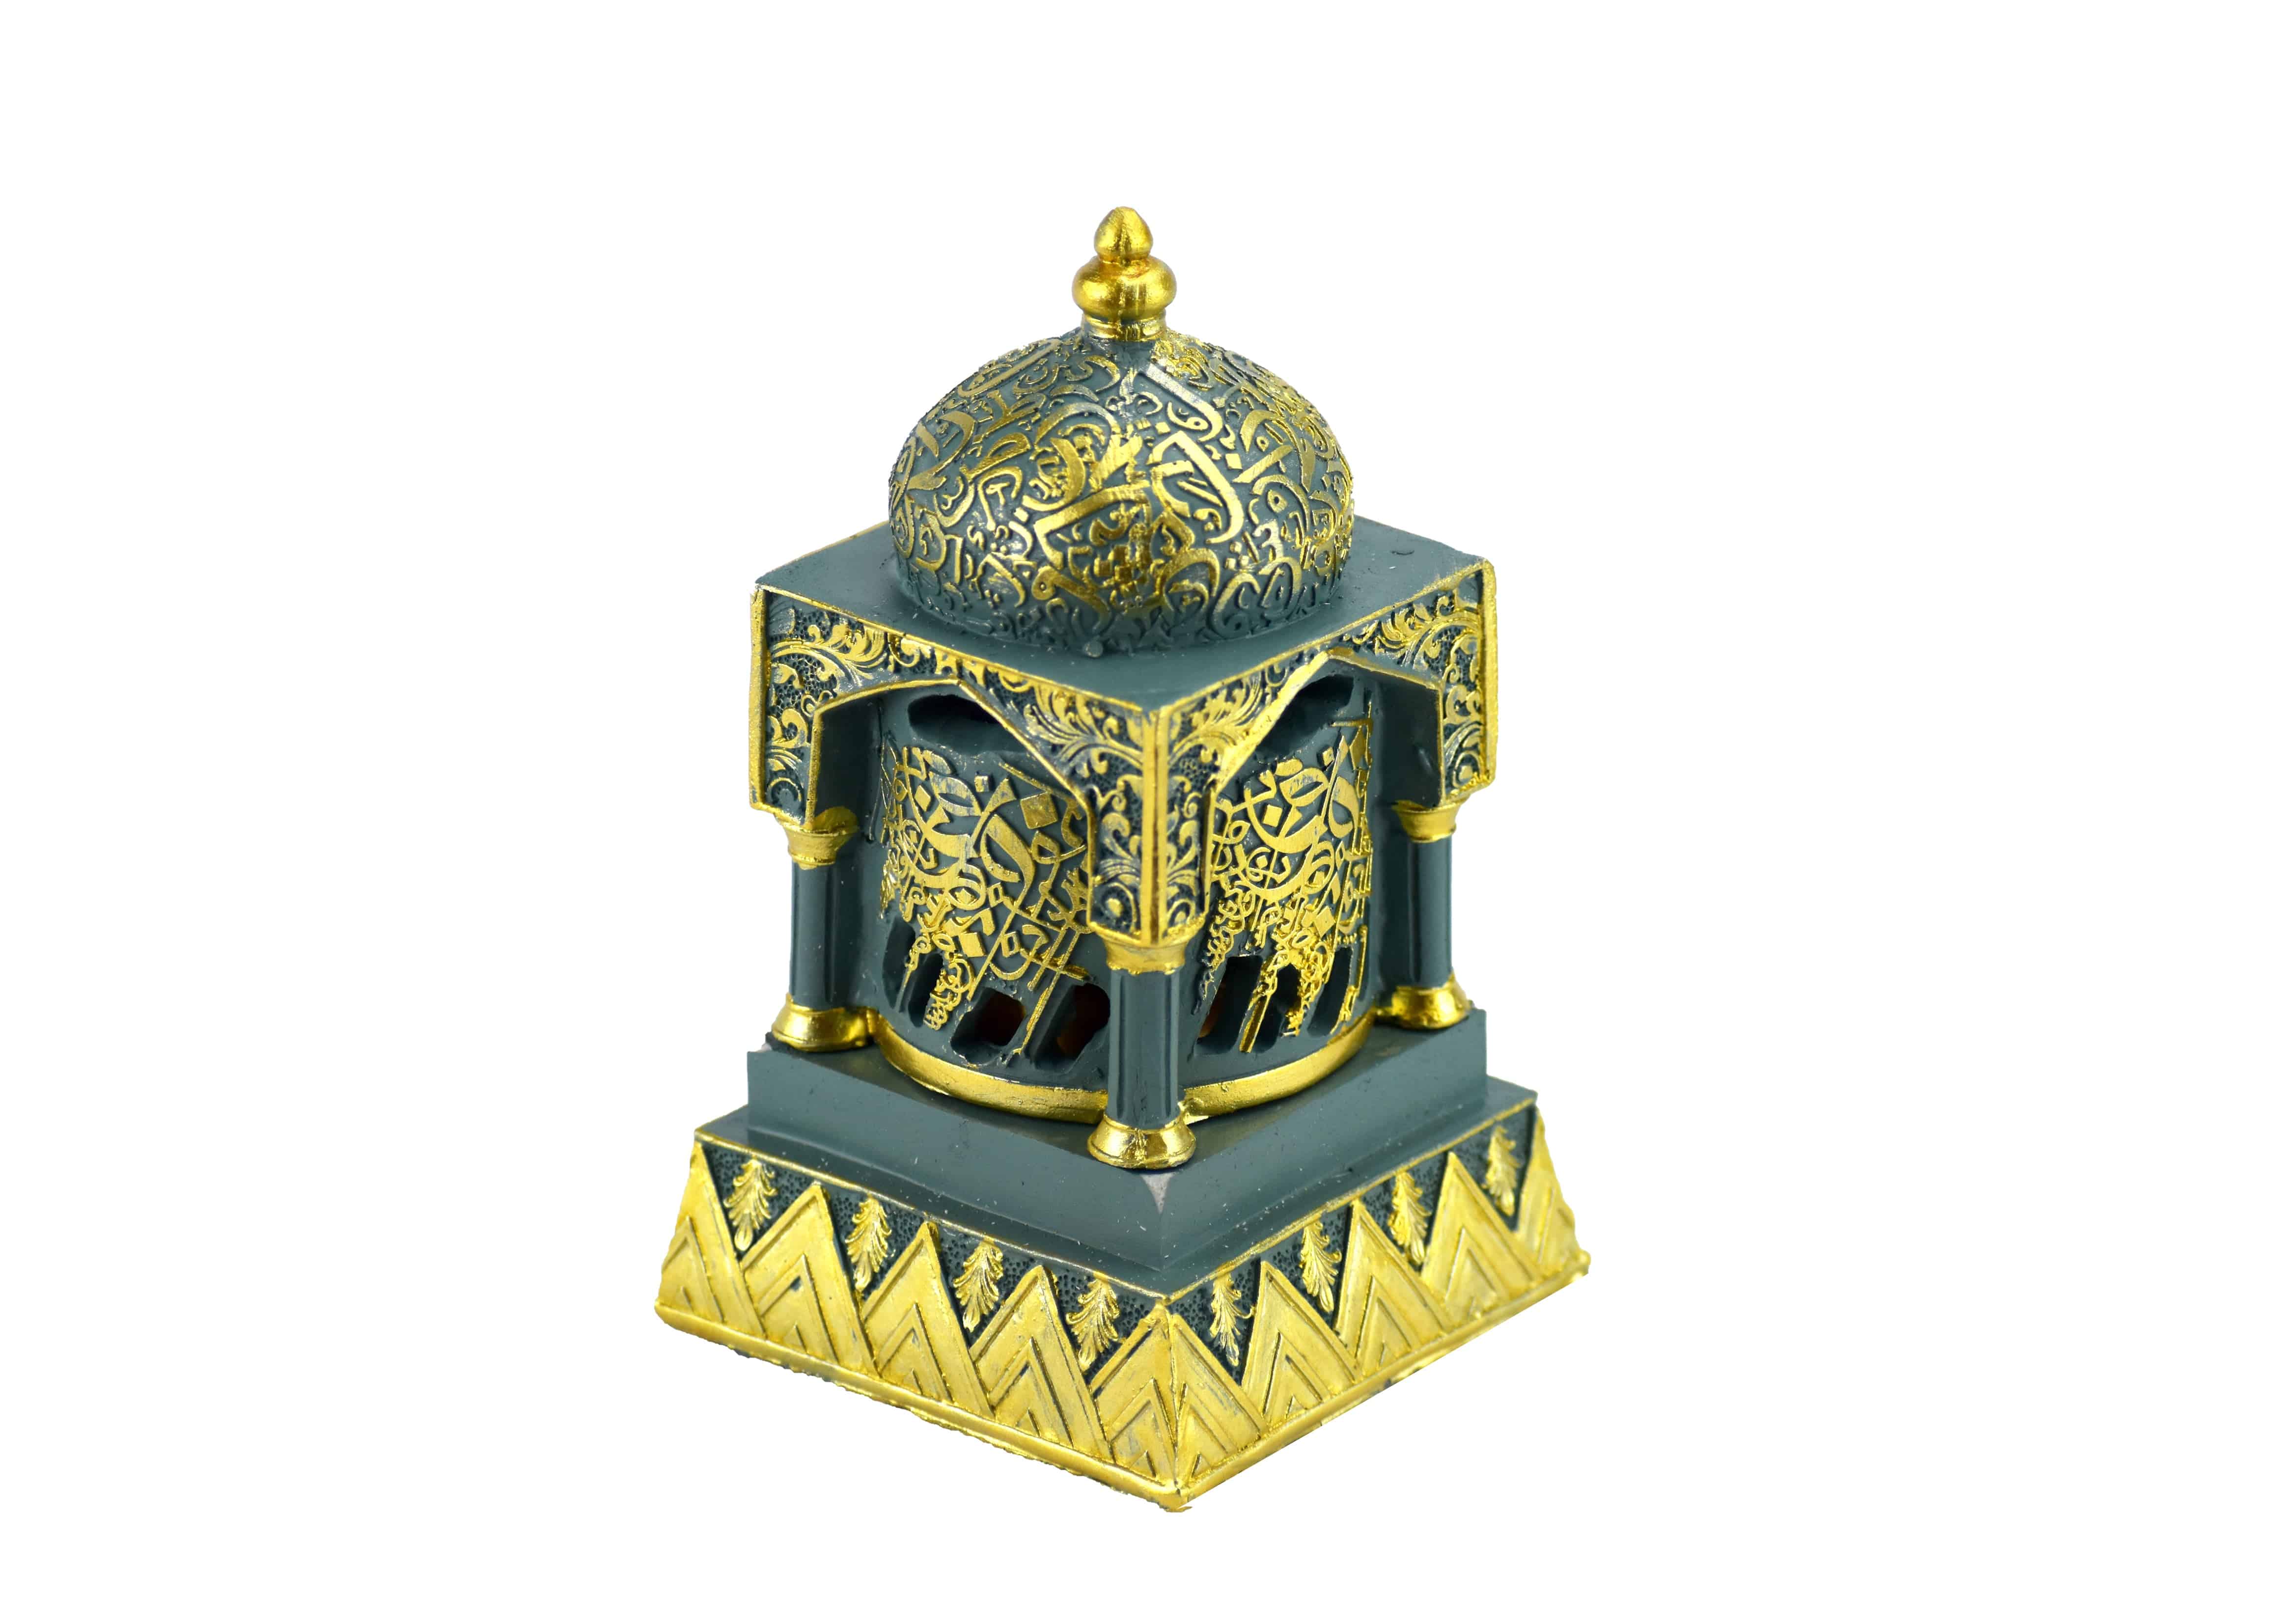 Engraved Calligraphy Minaret Style Incense Bakhoor Burner - 6 in. Teal - Intense oud